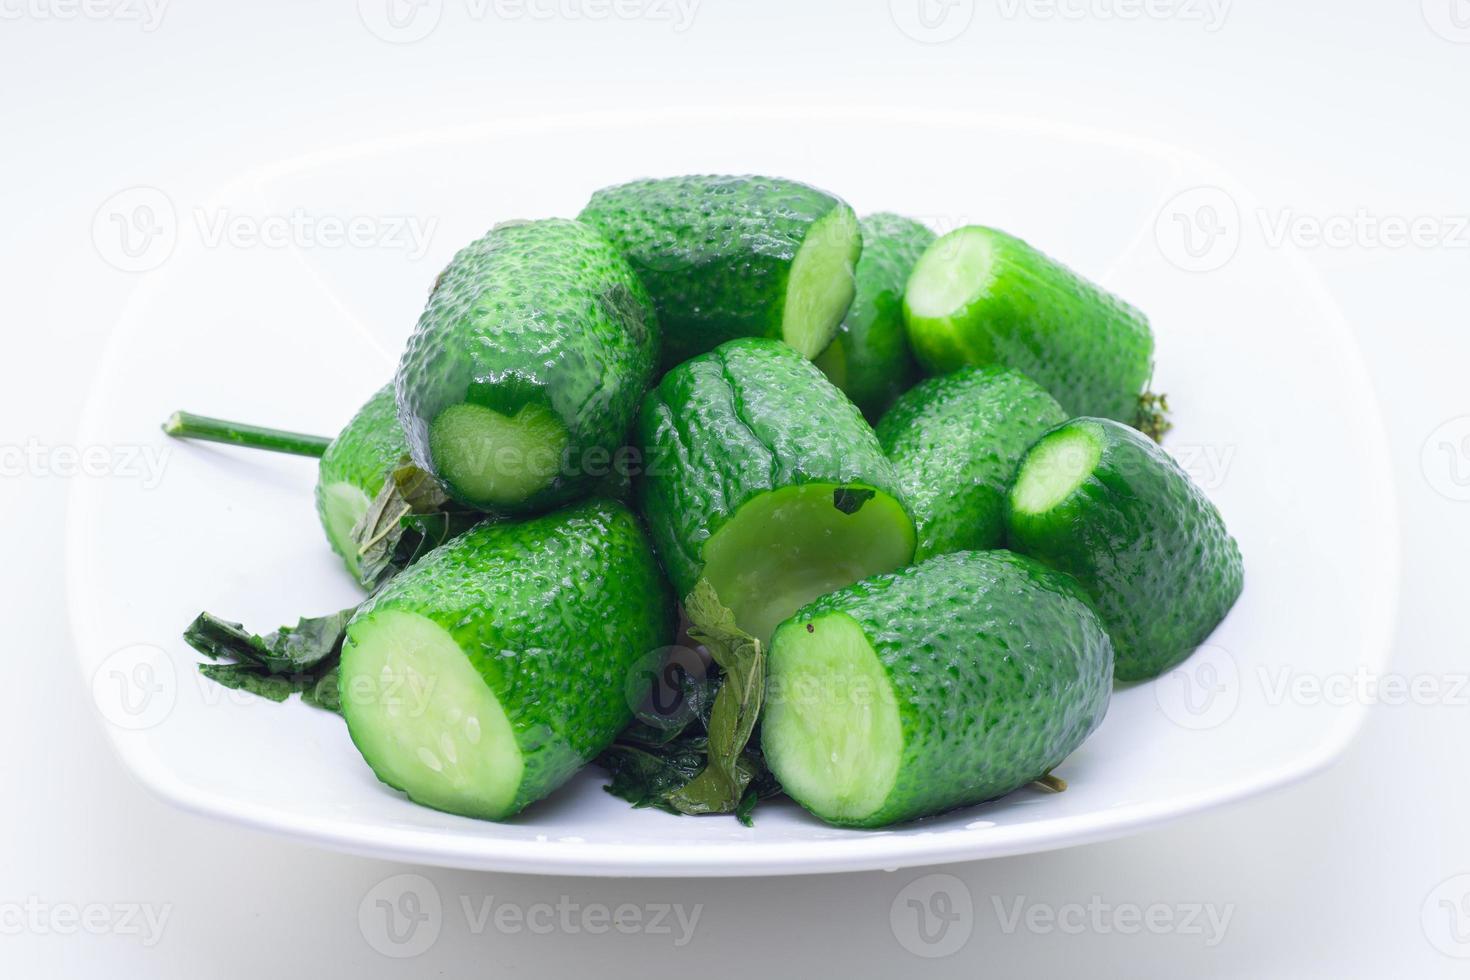 frisches Gemüse auf weißem Hintergrund foto